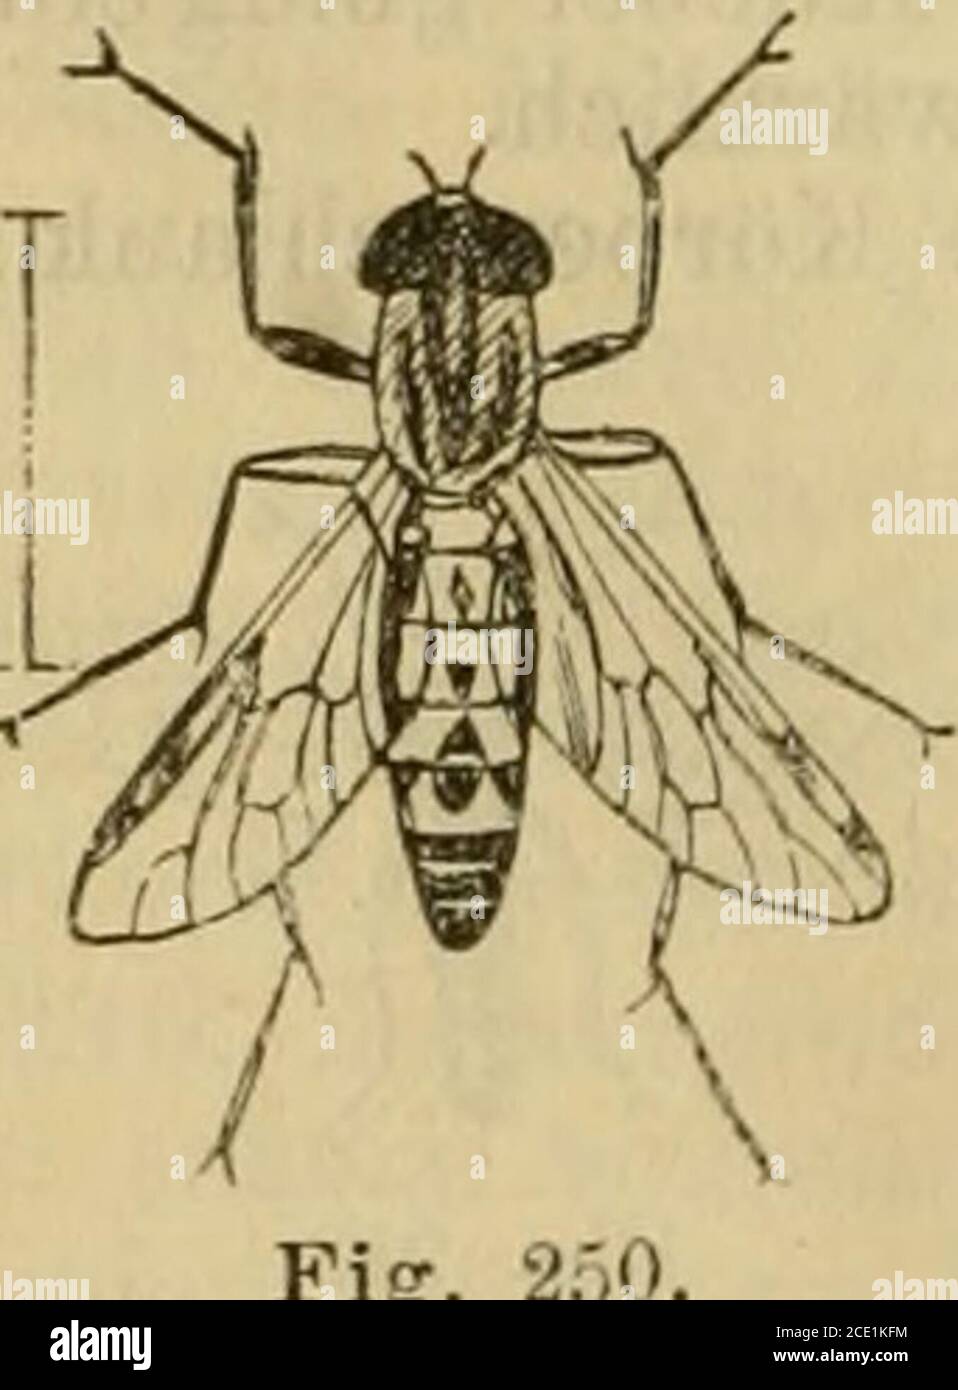 . Die Insektenwelt : ein Taschenbuch zu entomologischen Exkursionen für Lehrer und Lernende . chwarz; Untergesicht gold-gelb; Fühler von doppelter Kopflänge; Knebel gelblich;Beine rotgelb, Tarsen schwarz; Hinterbeine braunschwarz,die Kniee gelb; Tarsenglied 1 stark verdickt; Flügelgraubräunlich. 2. Leptida, Schnepfenfliegen: Stirn und Scheitel nicht tief einge-sattelt; Hinterleib keglig, 7—Sringlig, kahl oder -wenighaarig; Flügelbreit, Längsader 3 gegabelt: Hinterrandszellen .i; 3 Haftläppchen.Verwegene Räuber. Larven in der Erde. 34. Leptis F., Schnepfenfliege. Fühlerendgliedkurz, keglig oder Stock Photo